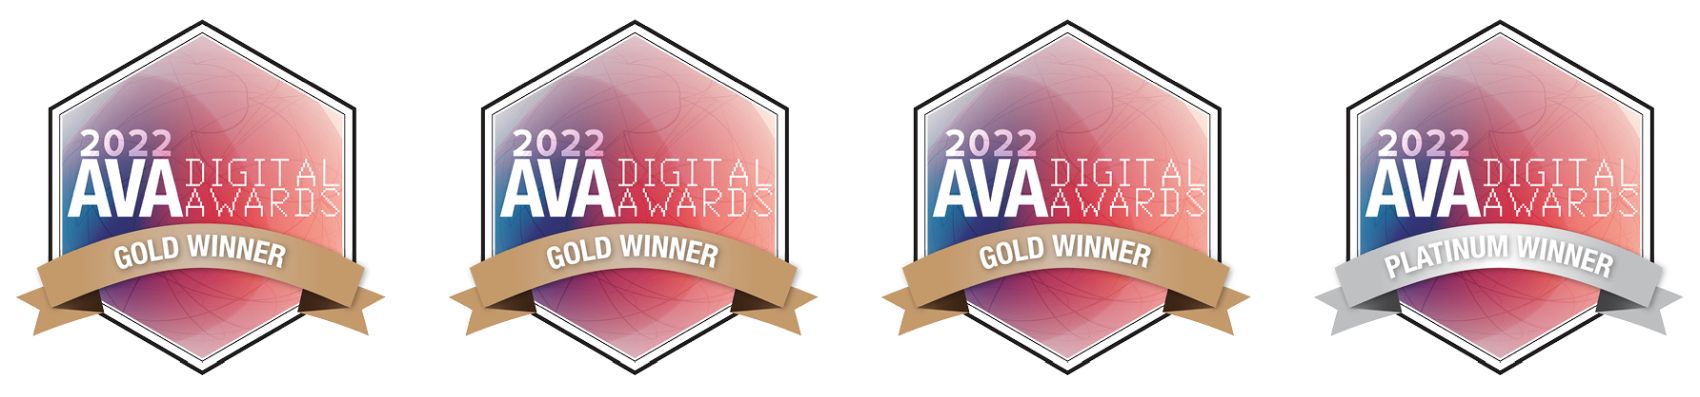 AVA Digital Awards 1700X397